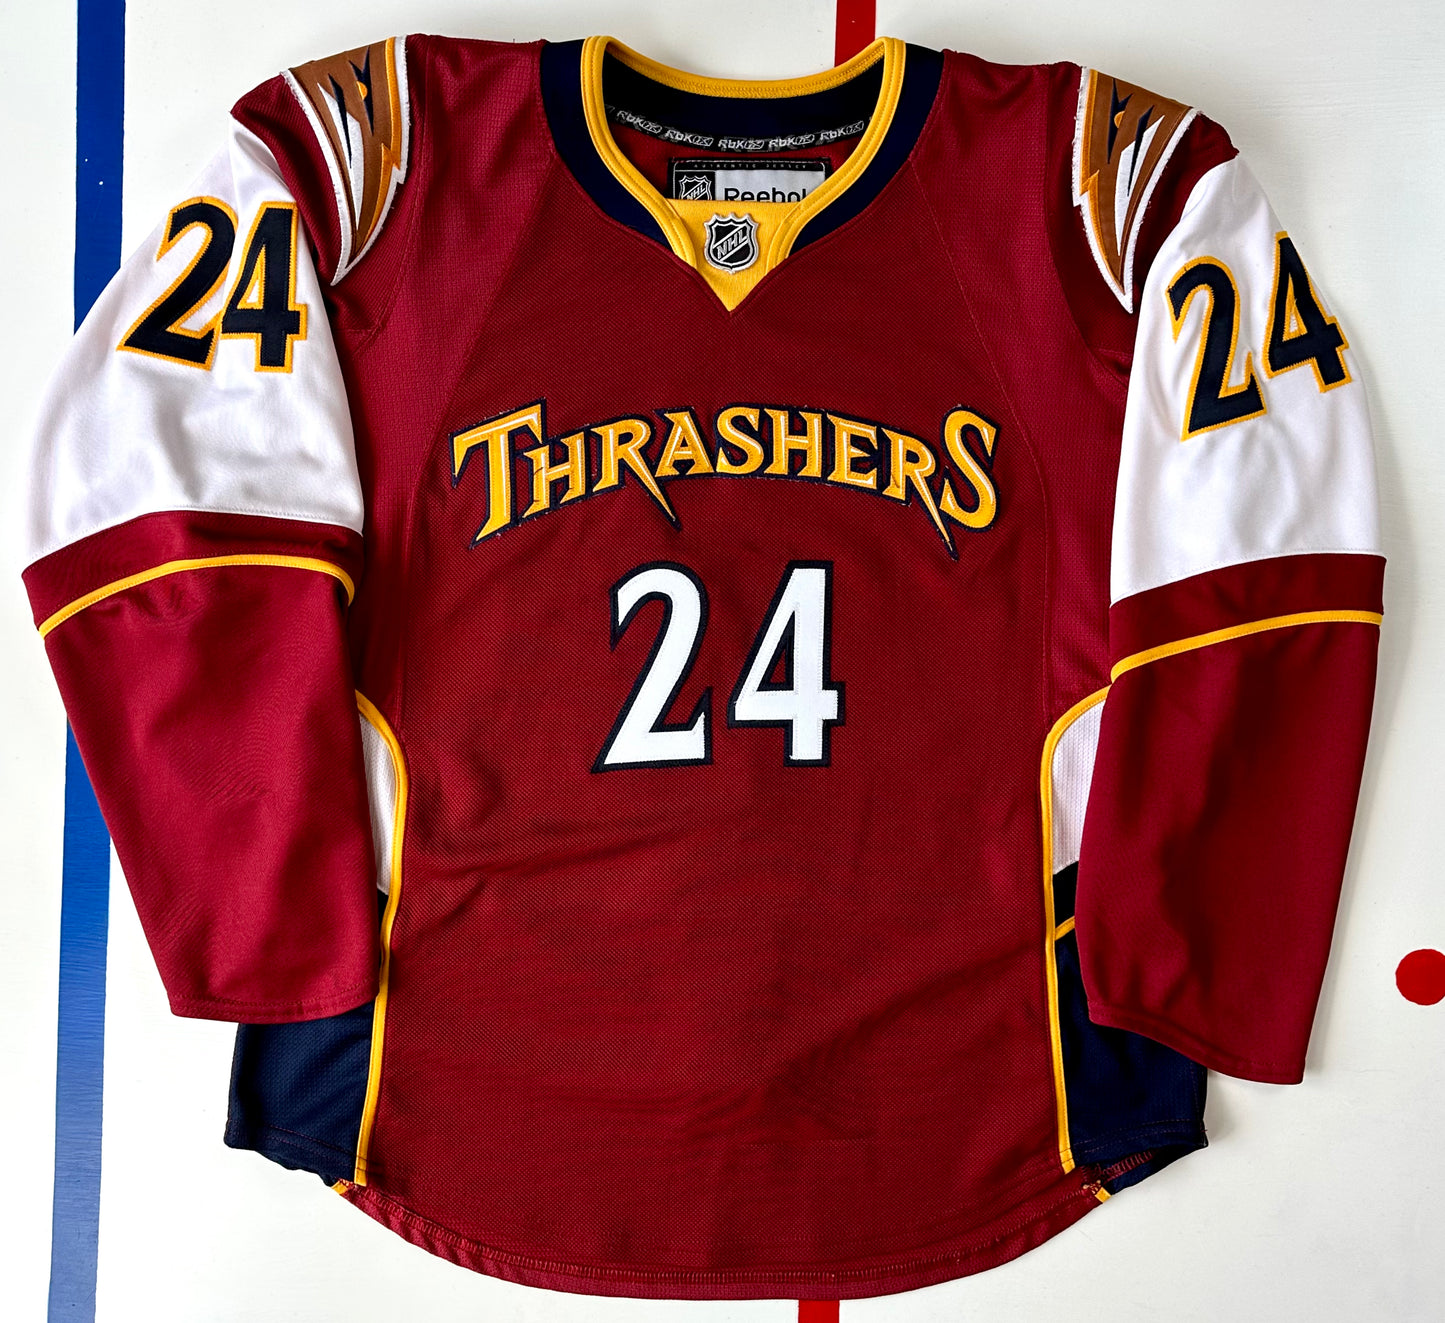 Atlanta Thrashers 2009-2010 Chris Chelios Alternate NHL Hockey Jersey (50/Medium)